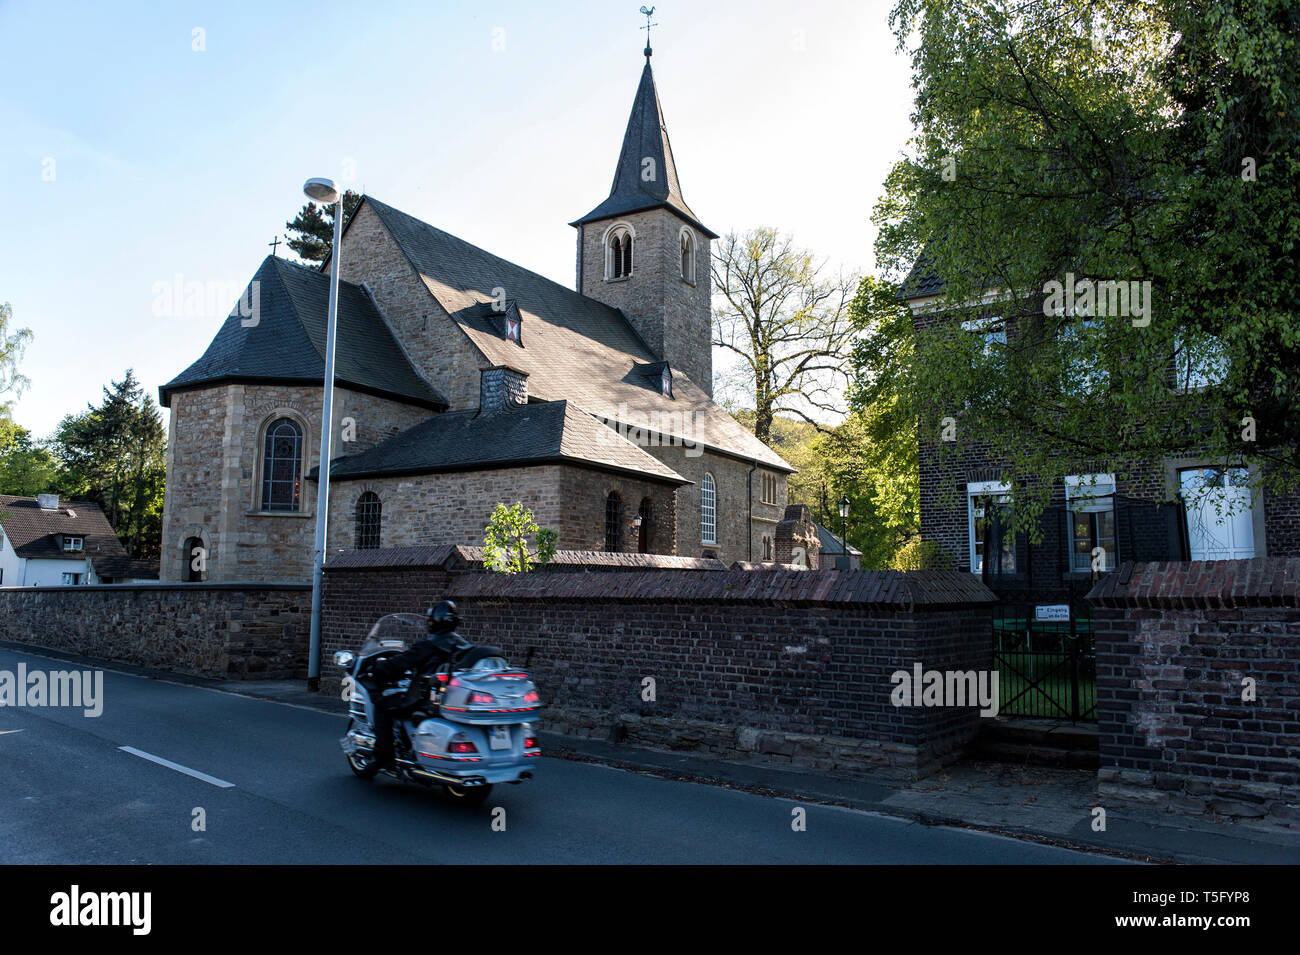 An der Kirche St. Laurentius en Mülheim Mintard faehrt ein Motoradfahrer mit einer grossen Maschine vorbei. Foto de stock